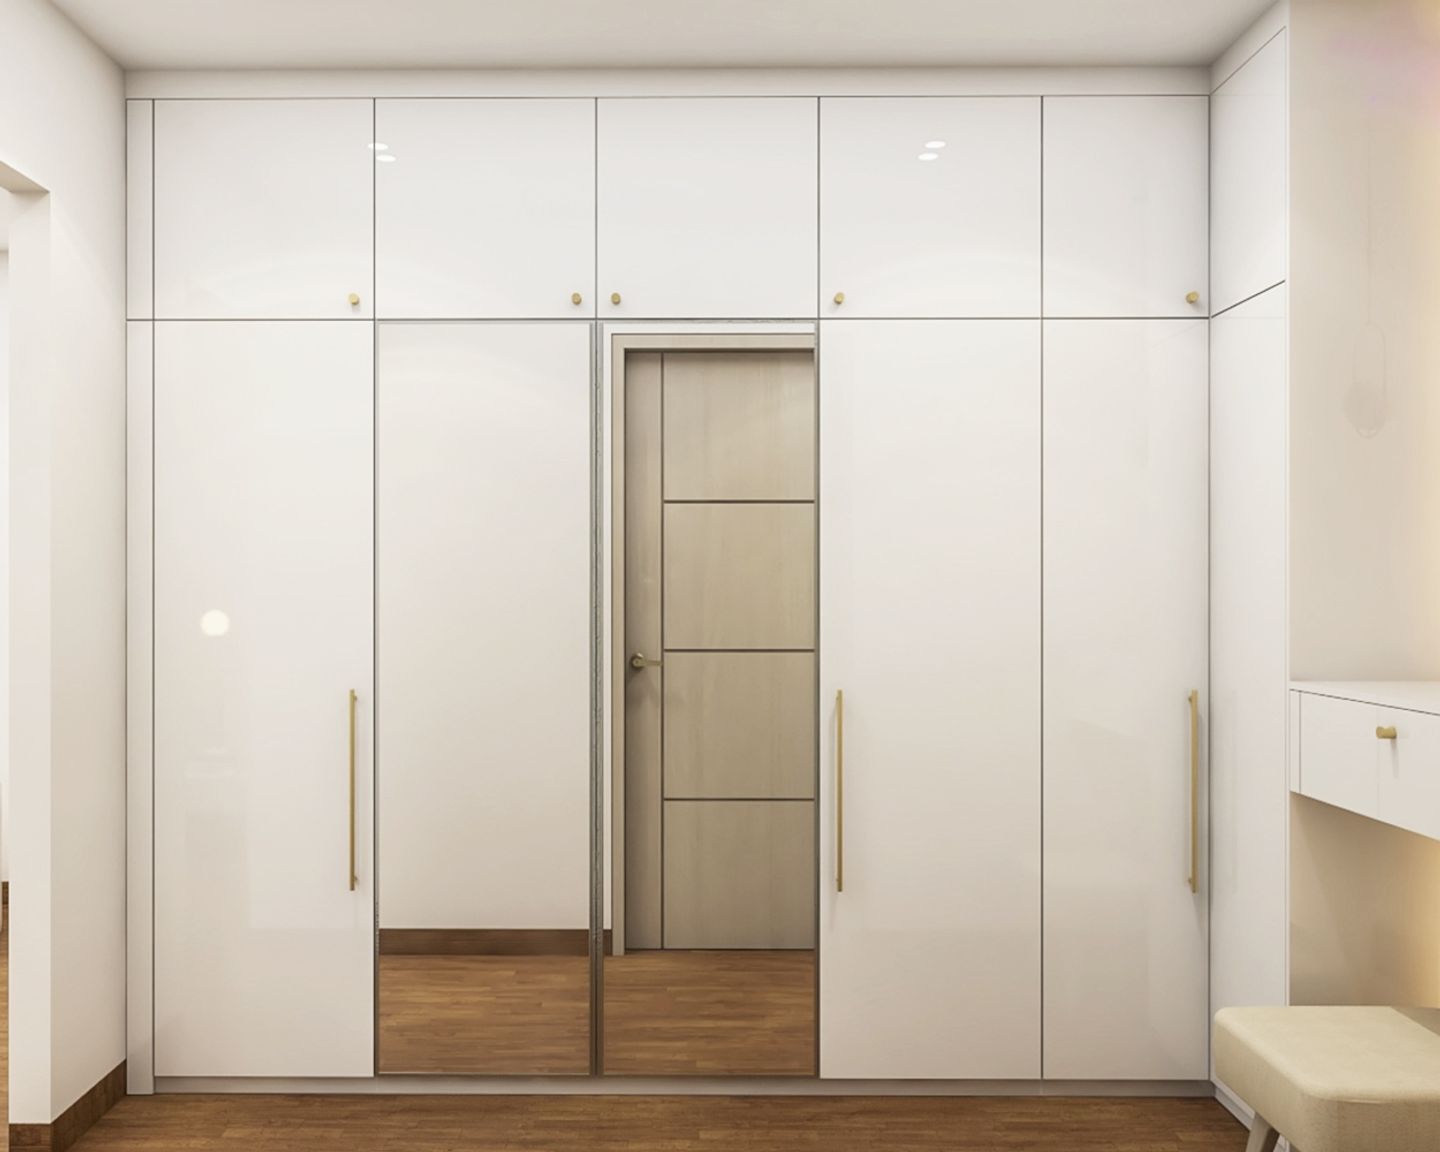 Frosty White 6-Door Wardrobe Design With Mirror - Livspace